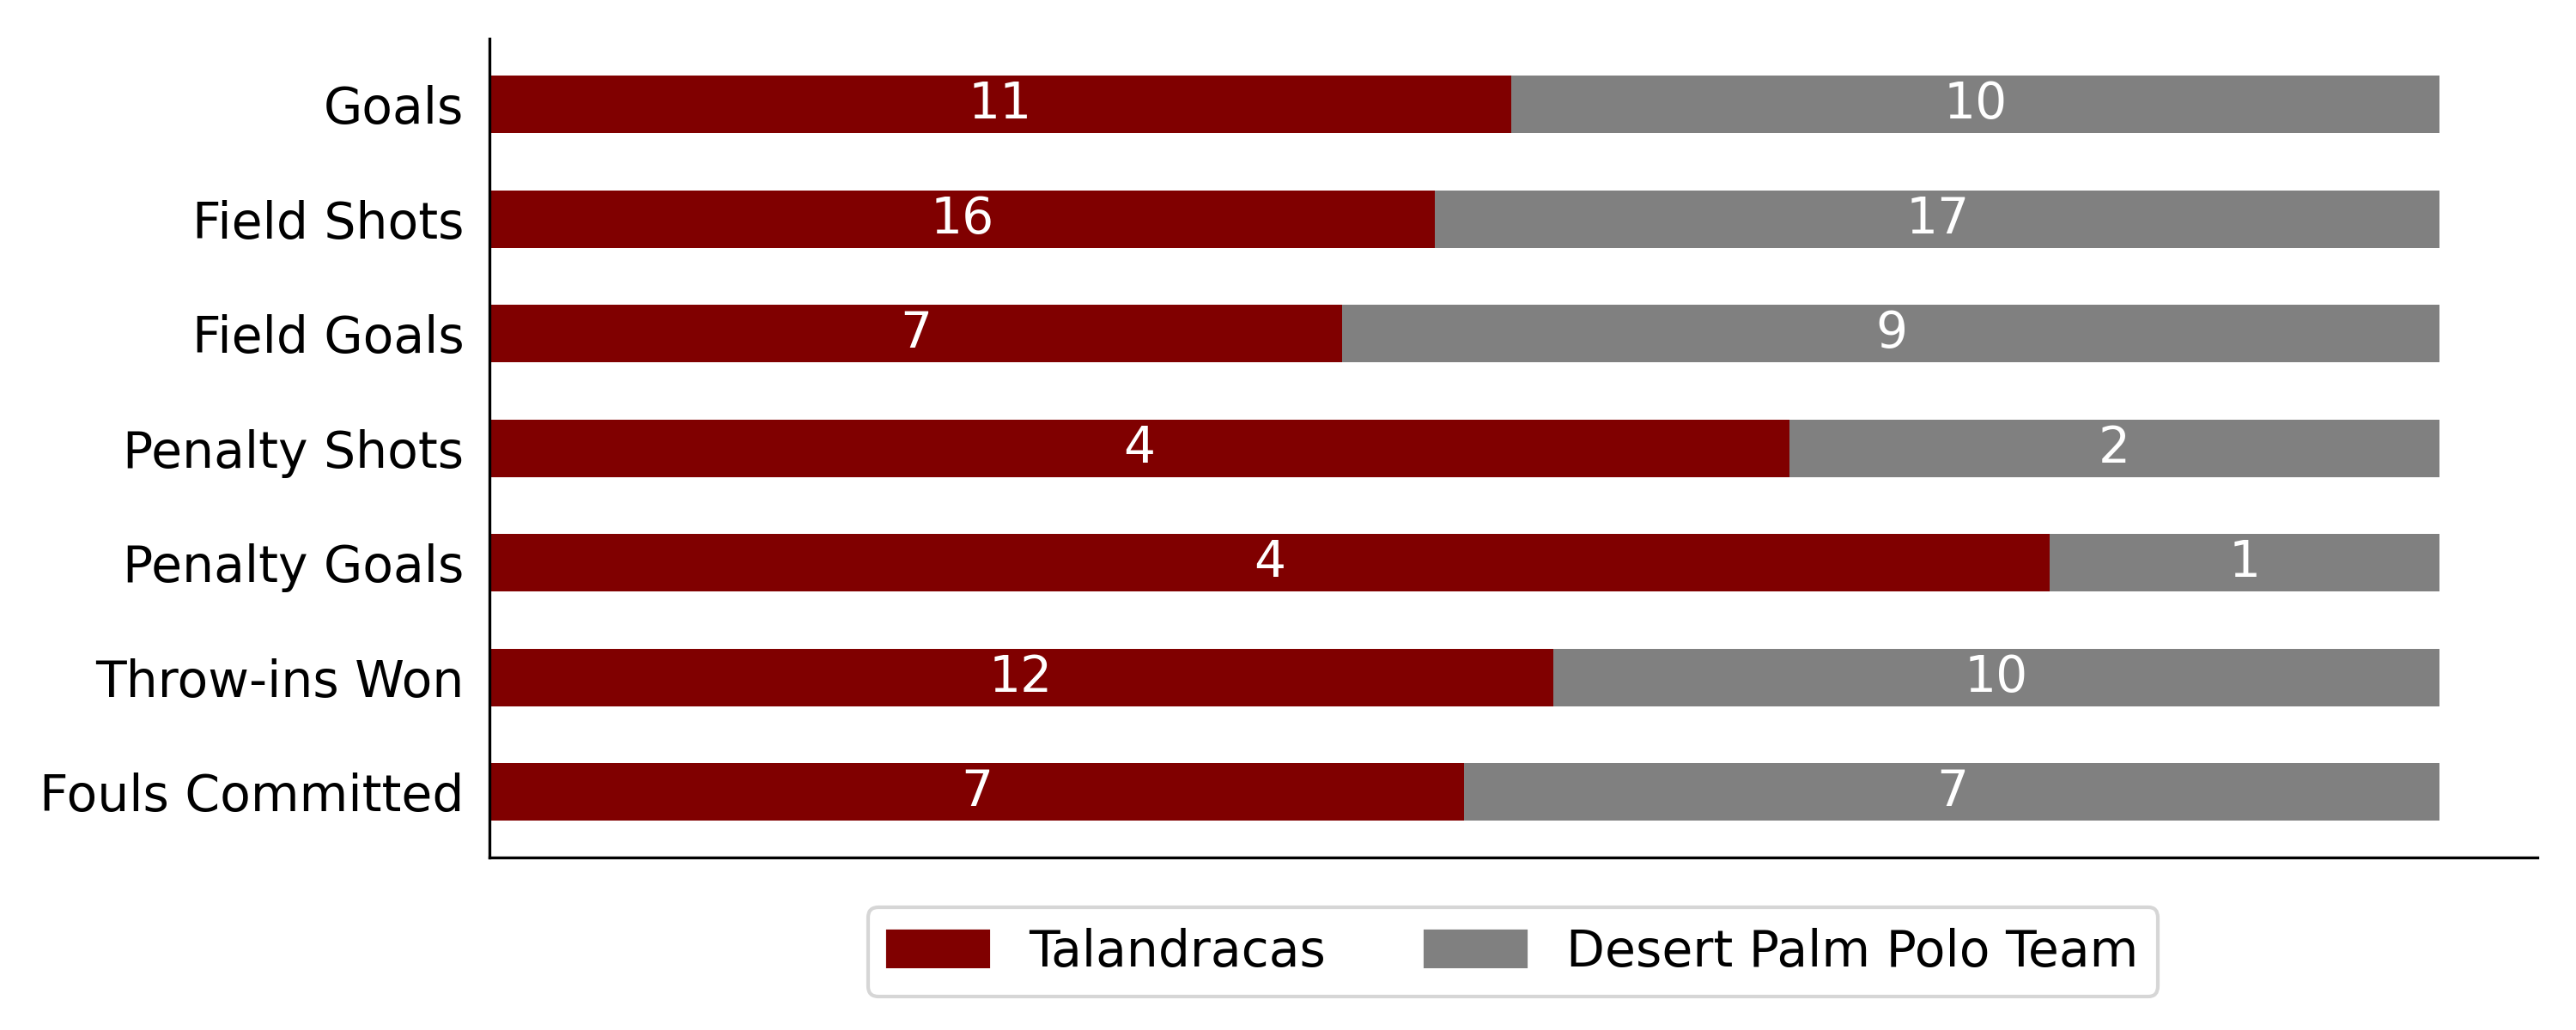 Talandracas won against Desert Palm Polo Team 6